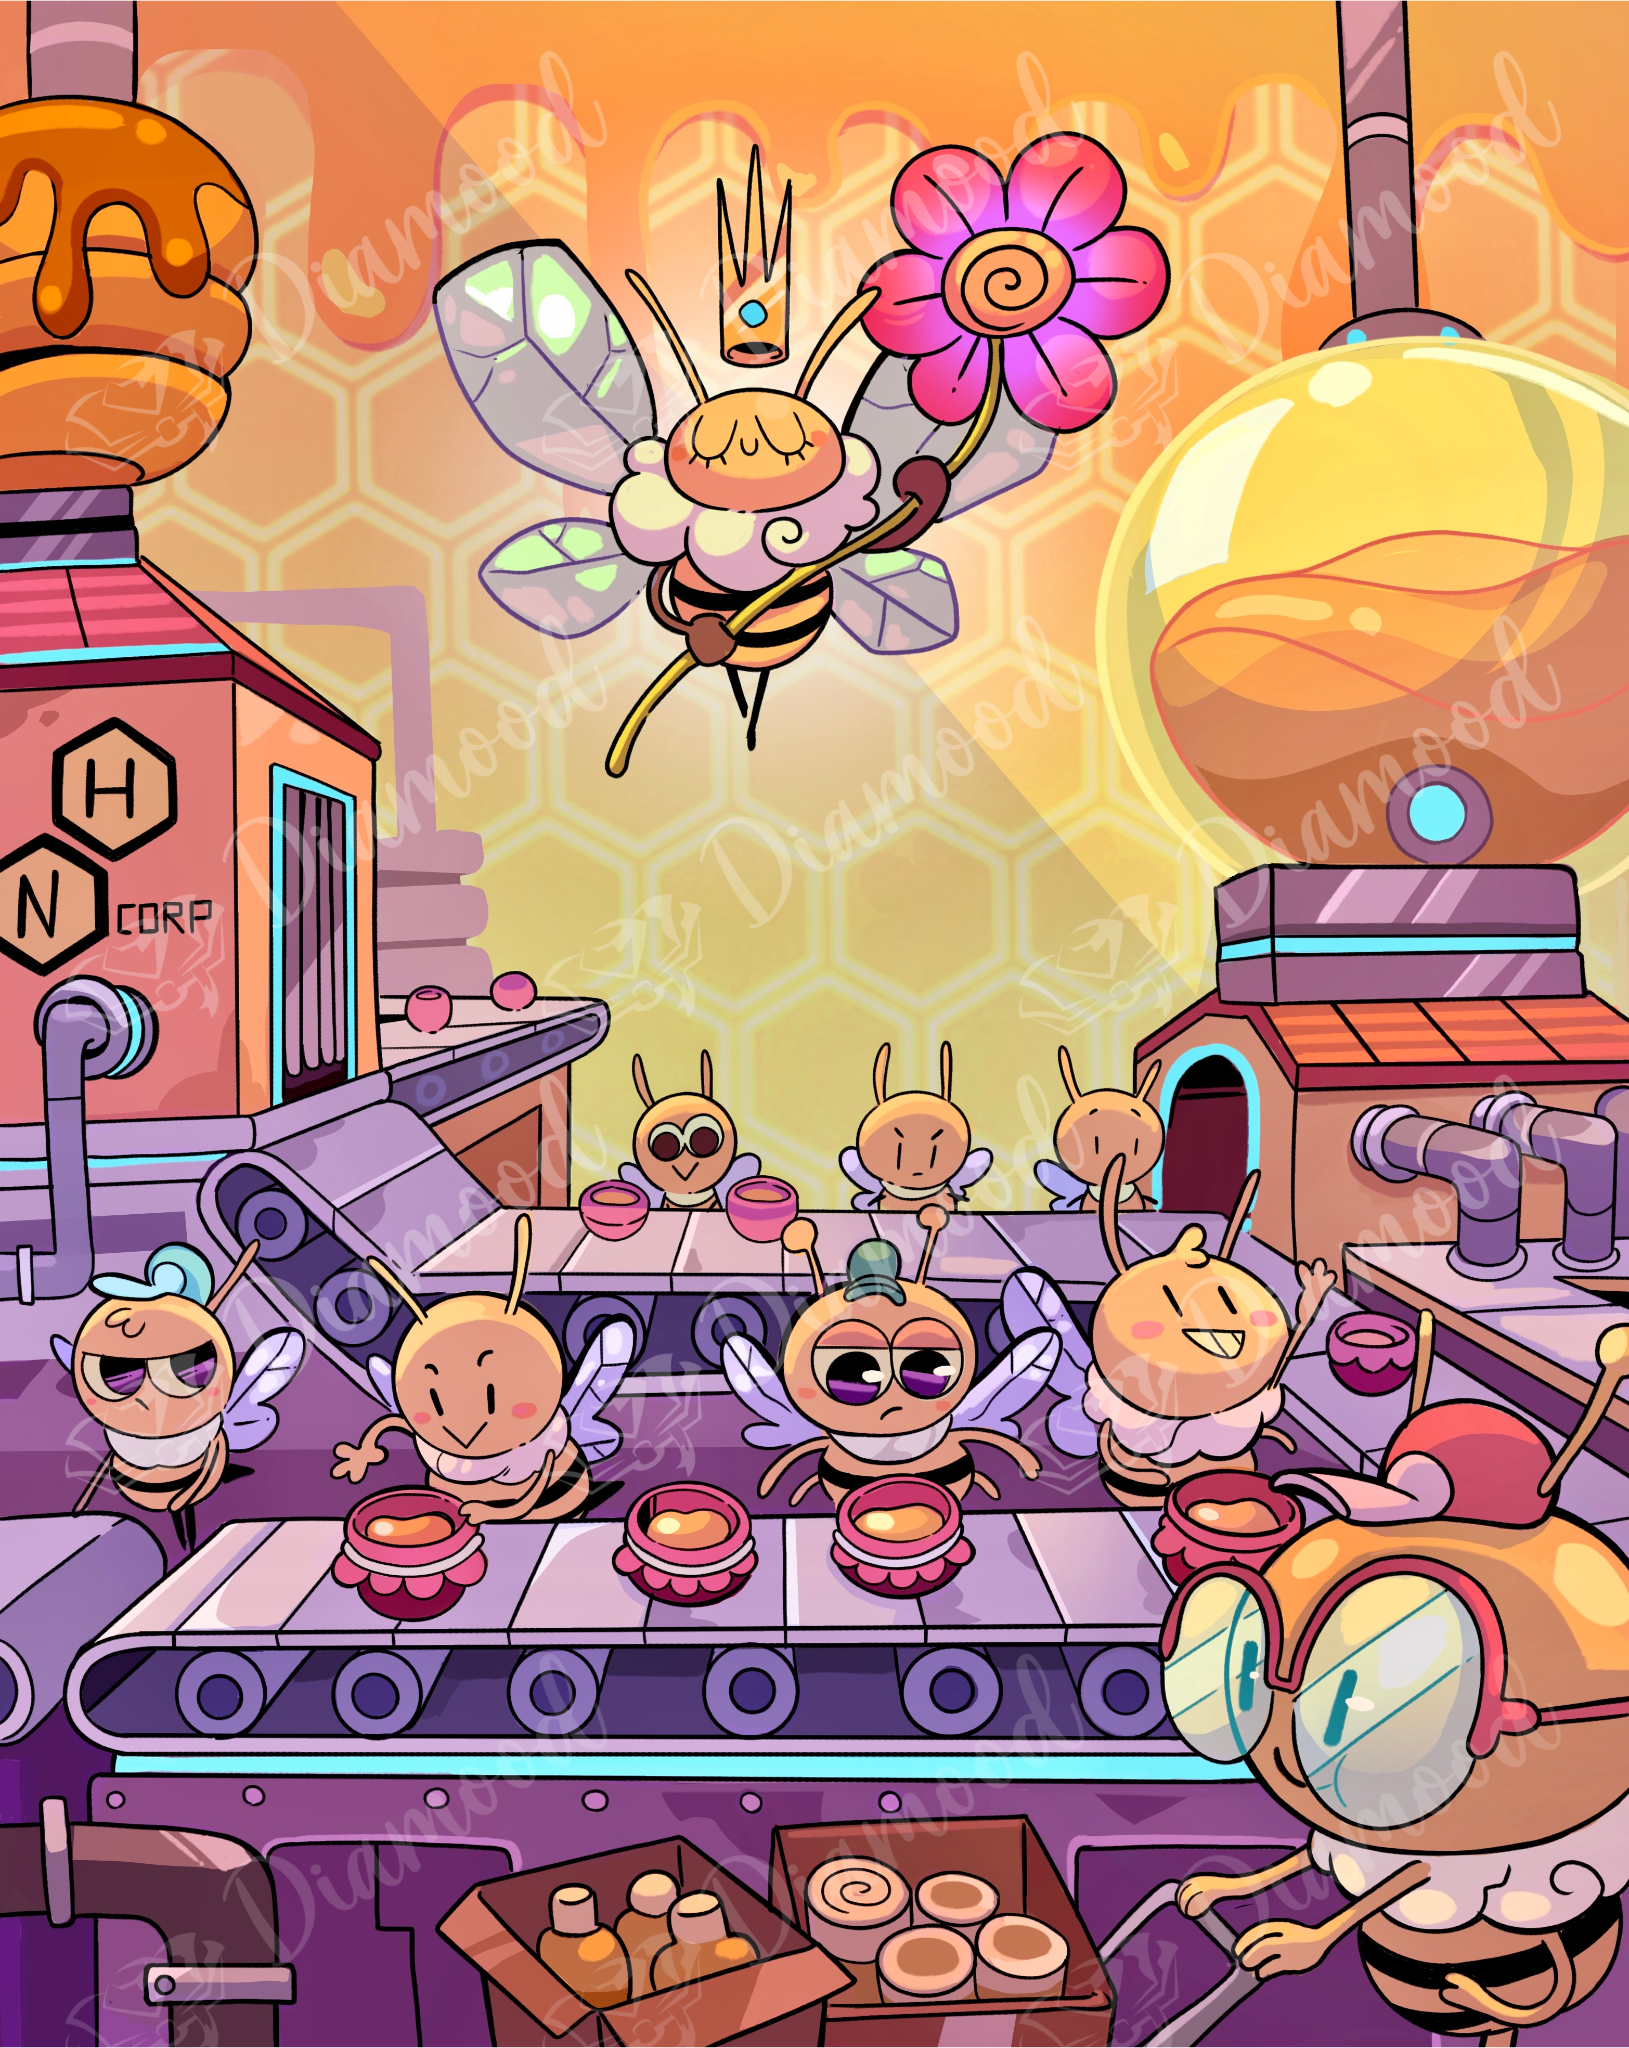 Ilustración de un panal con unas abejas dentro. Es una fábrica de miel con maquinaria. Hay una gran abeja reina arriba sujetando una flor.